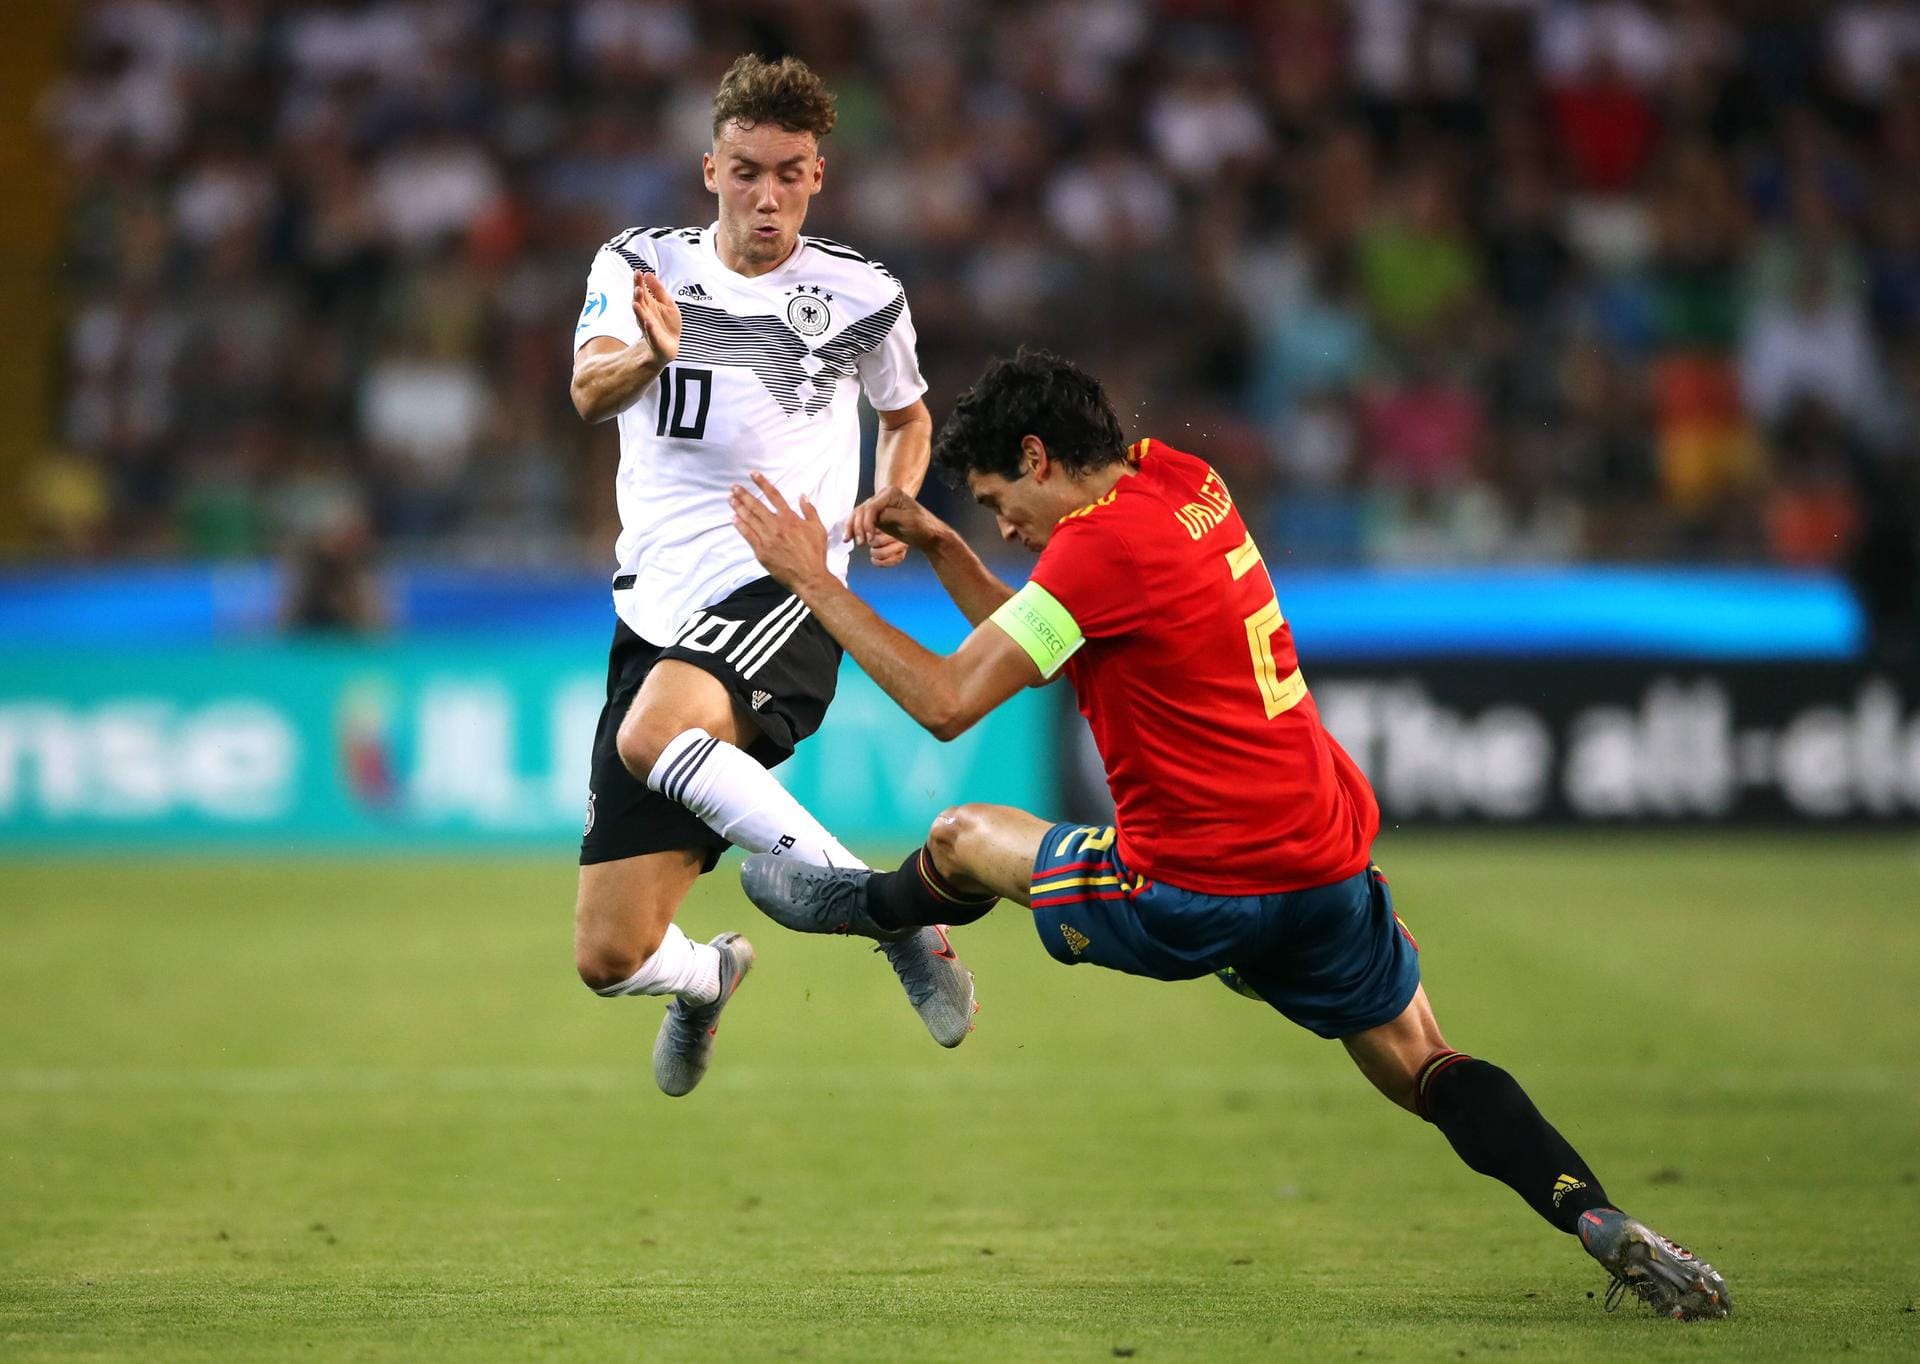 Die deutsche Nationalmannschaft der U21-Junioren spielte am Sonntagabend Im EM-Finale in Italien gegen Spanien. Endstand: 1:2. Redakteur Tim Lüddecke hat die Leistung der deutschen Spieler einzeln bewertet.